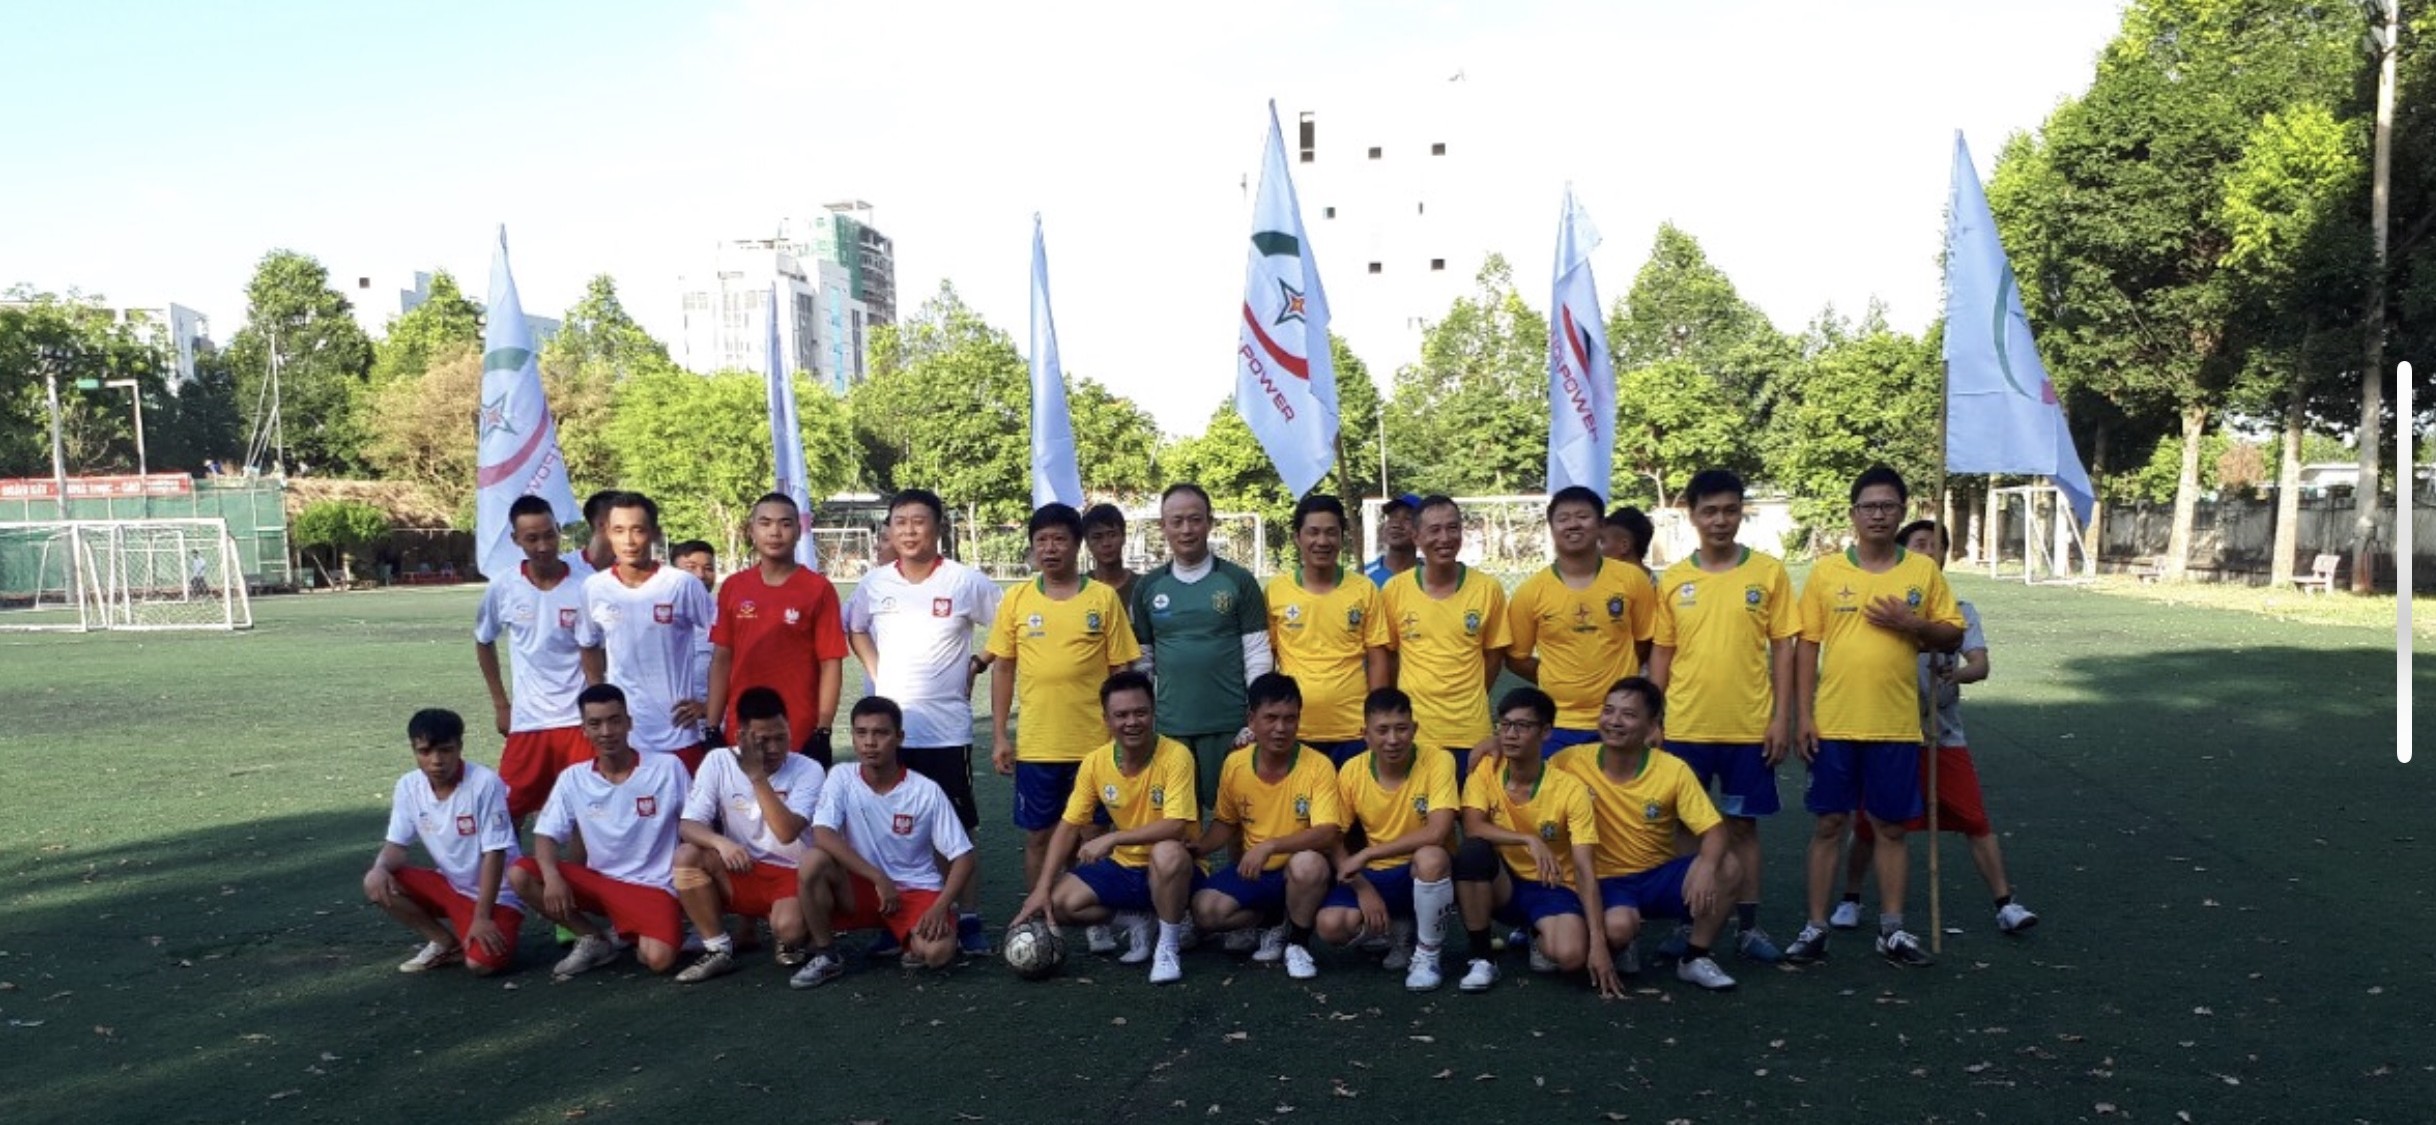 Giải bóng đá Hanoi Power mở rộng - 2018